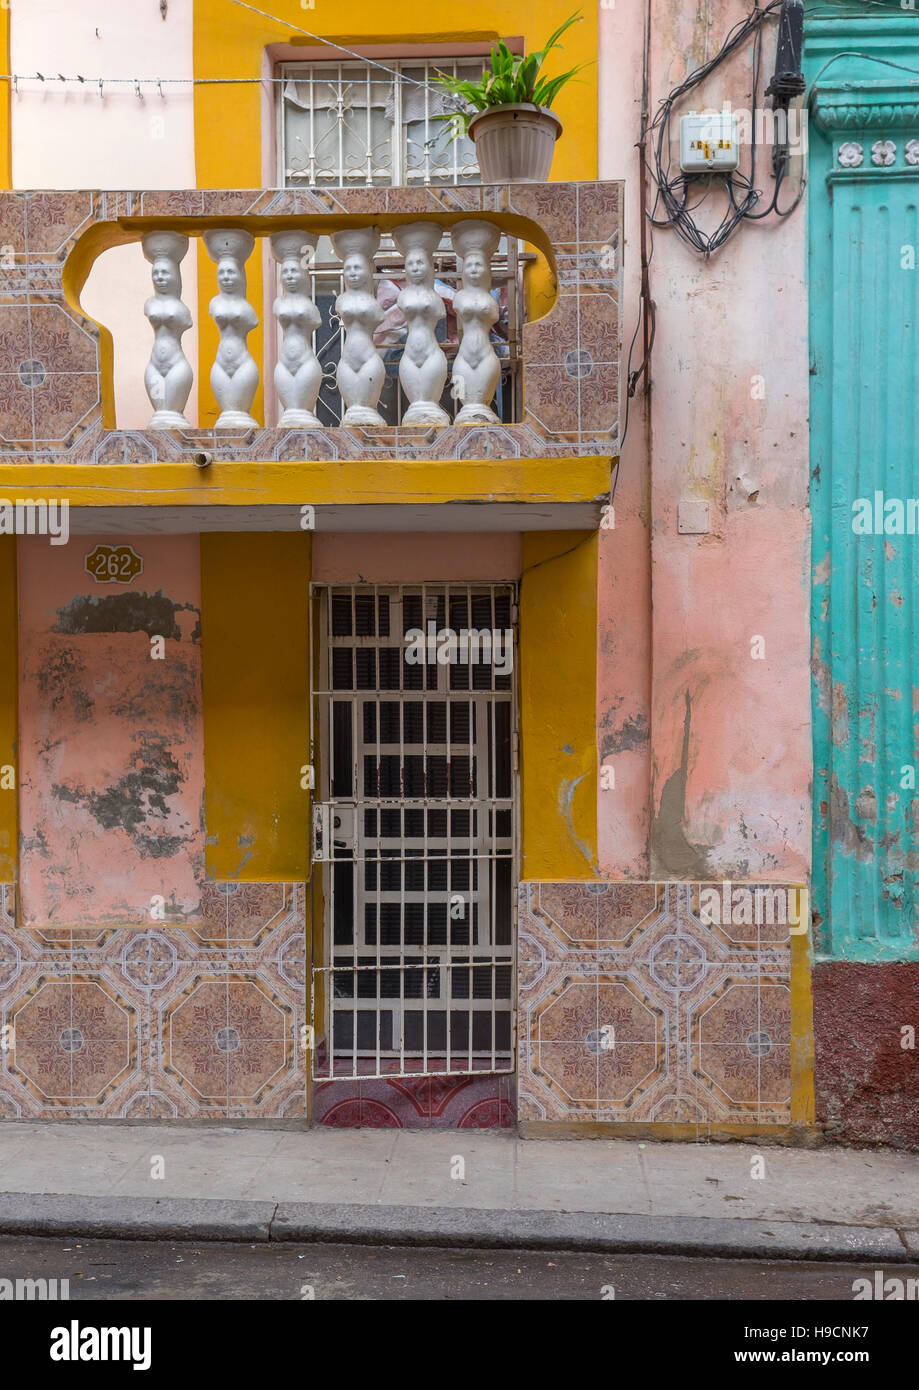 Havana, Cuba: Wall and doorway details Stock Photo